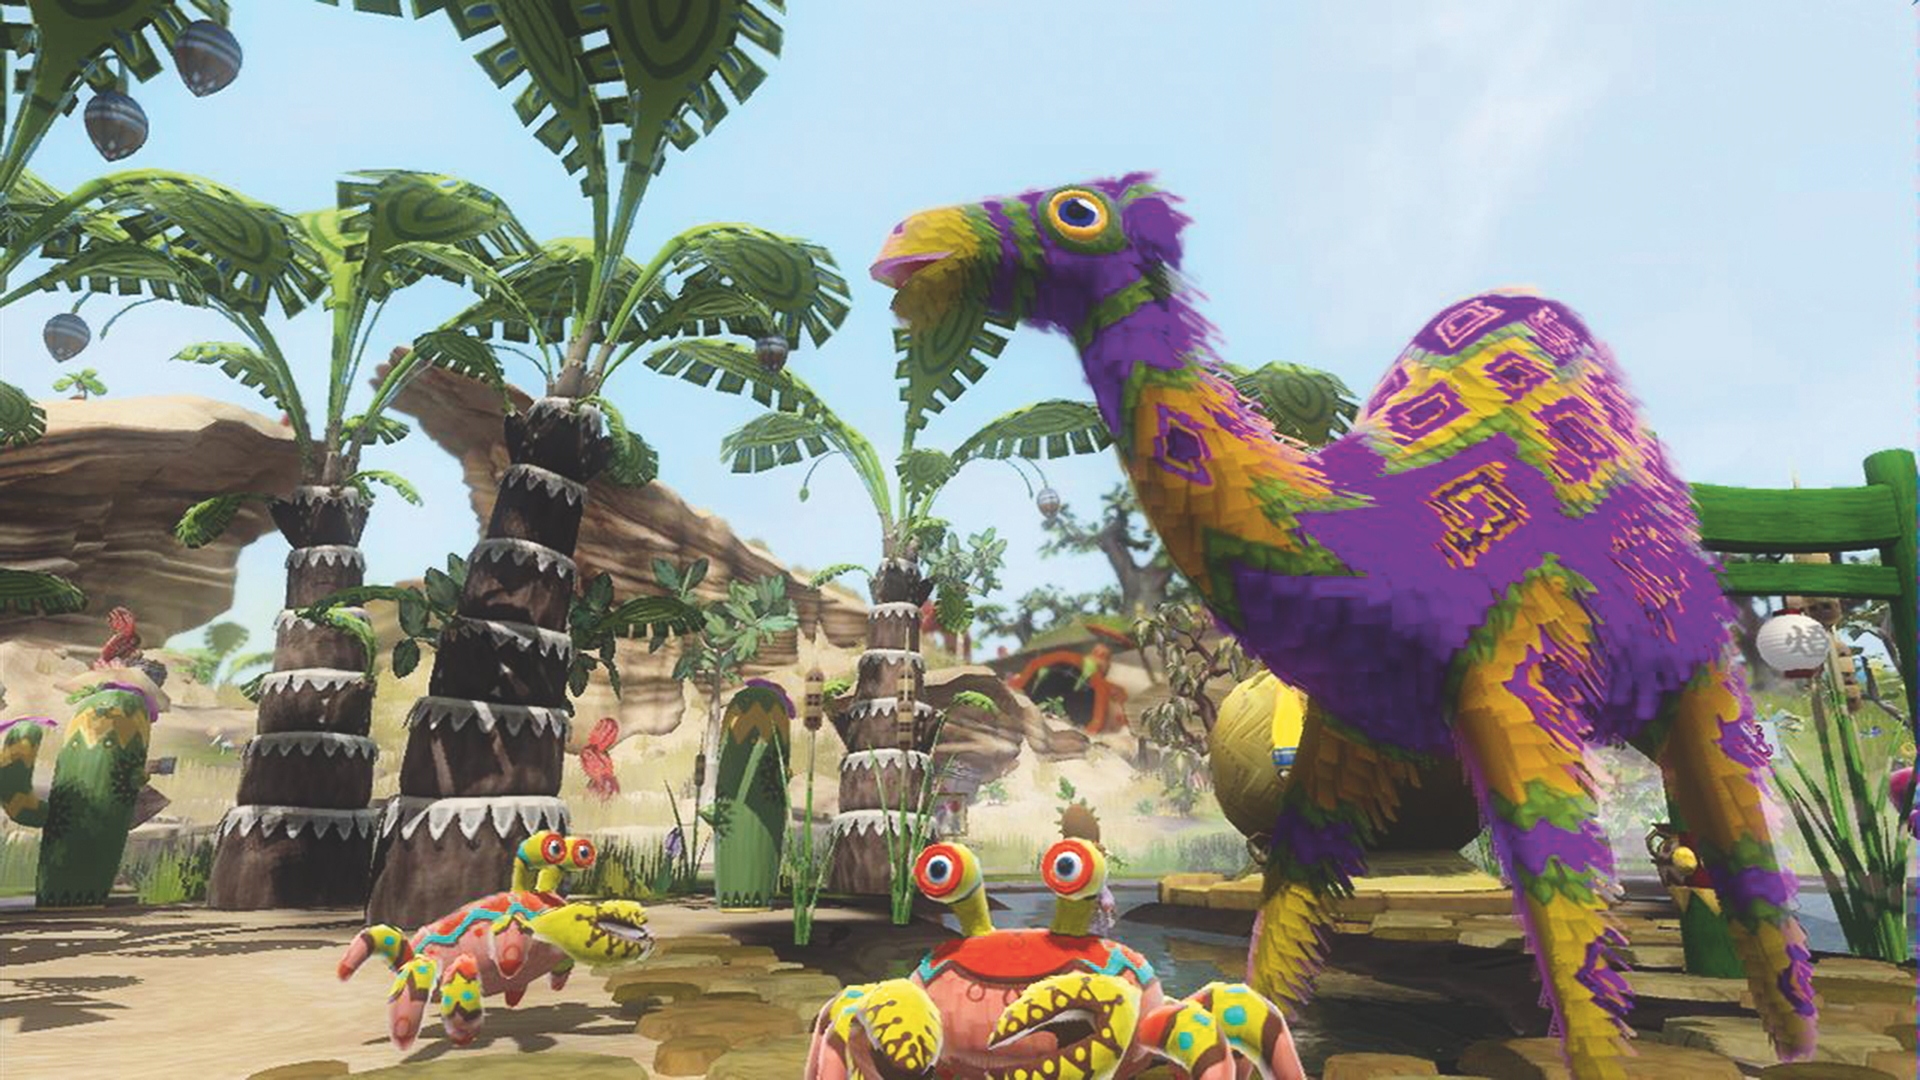 最高のファーム ゲーム - Viva Piñata: Trouble in Paradise。 スクリーンショットには、さまざまなピニャータがプレイヤーの庭内を歩いている様子が示されています。